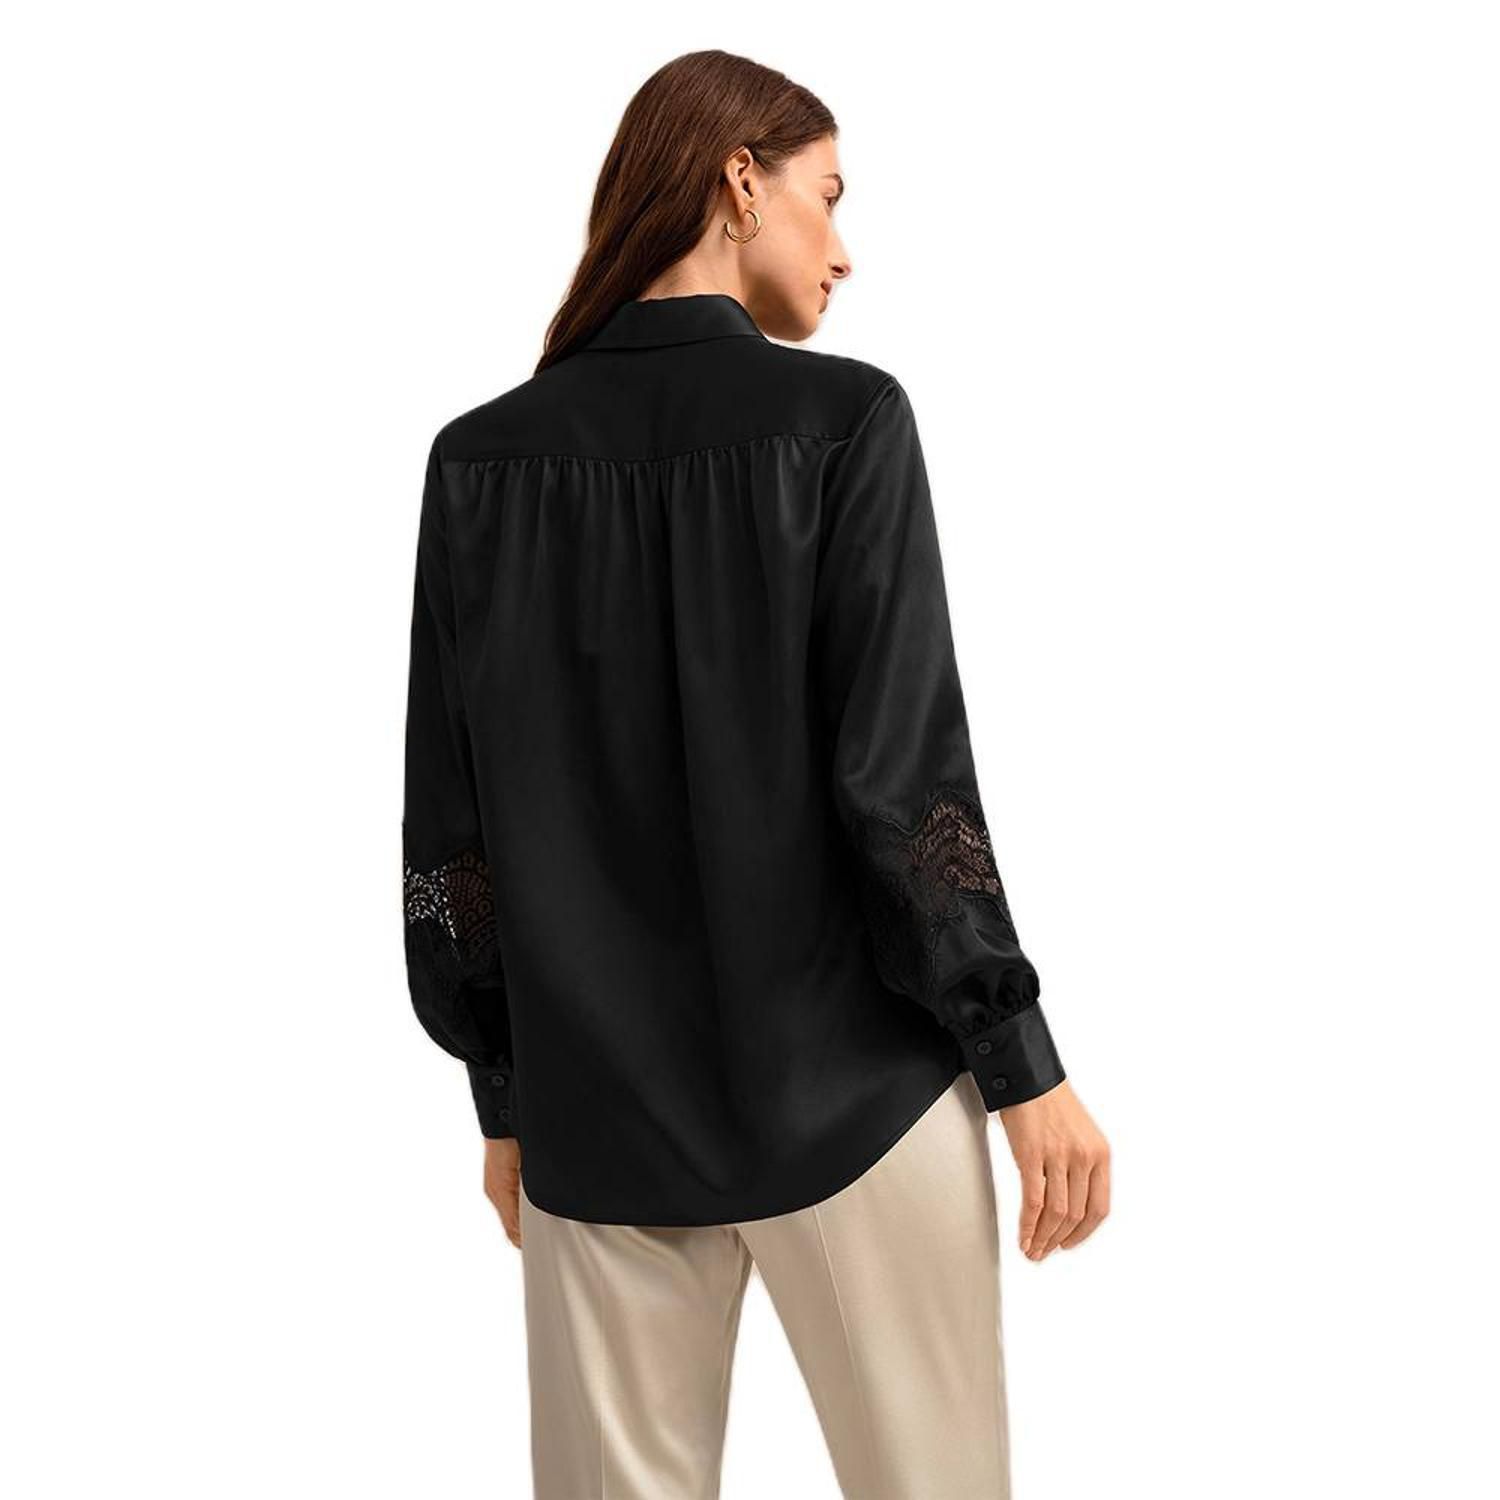 LILYSILK Кружевная блузка Armeria для женщин Lilysilk фотографии